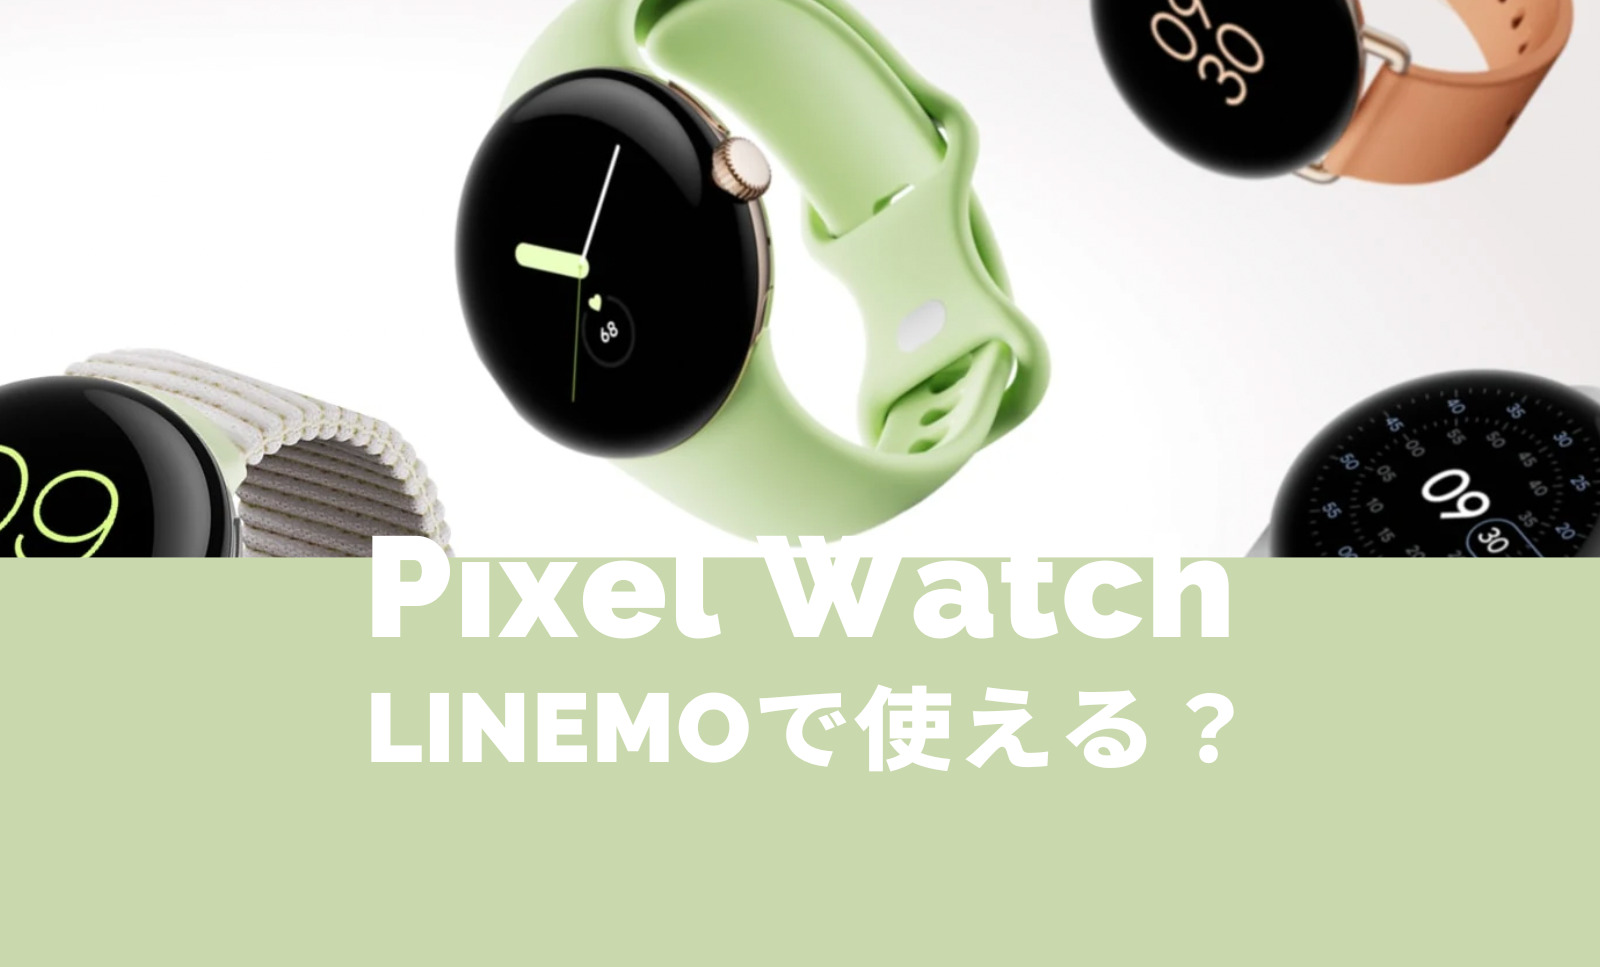 Pixel Watch 2(ピクセルウォッチ)はLINEMO(ラインモ)で使える？LTEモデルは？【Google】のサムネイル画像